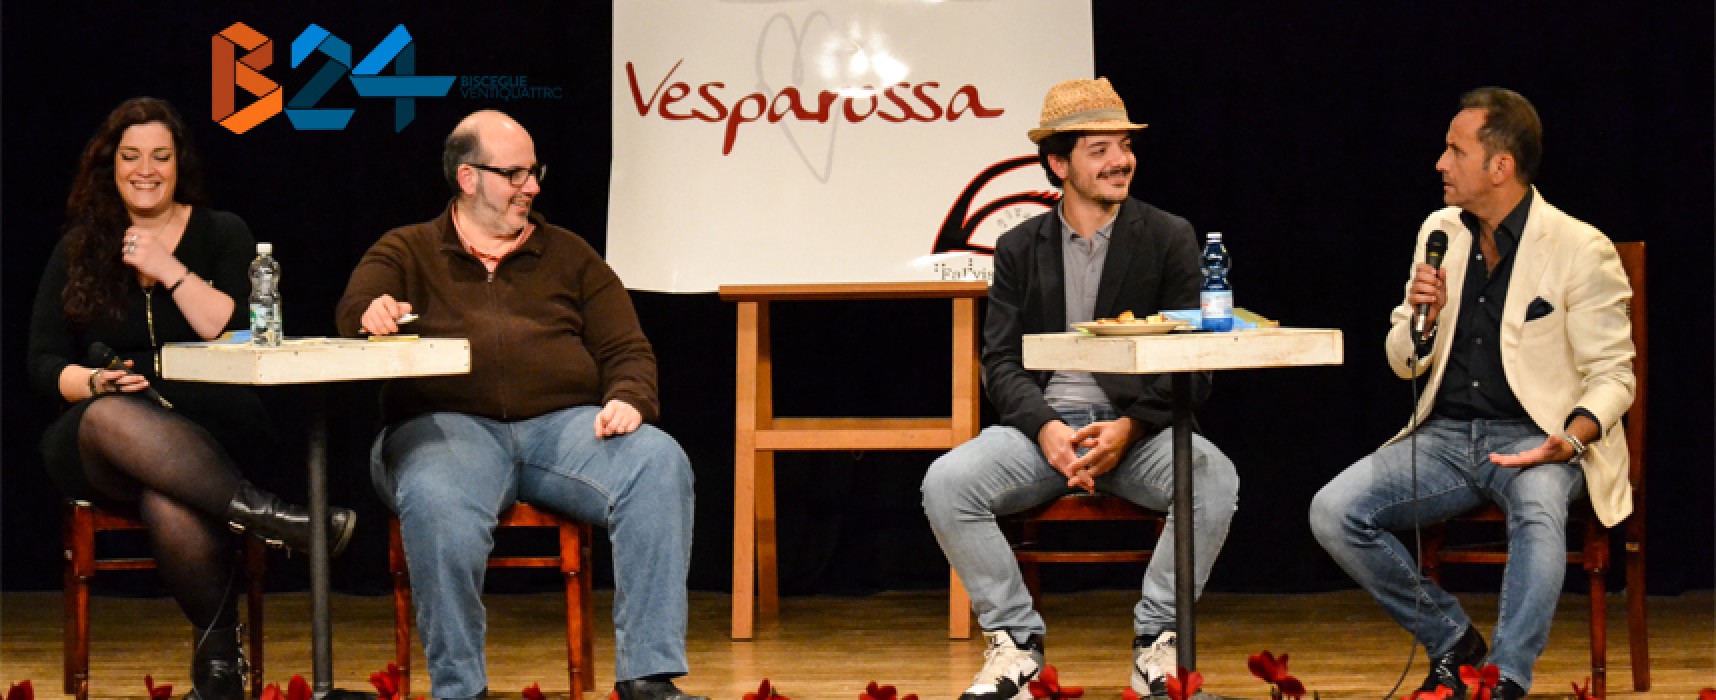 Uccio De Santis e Mario Pennelli stregano il “Don Sturzo” nella serata dedicata al Vesparossa / FOTO